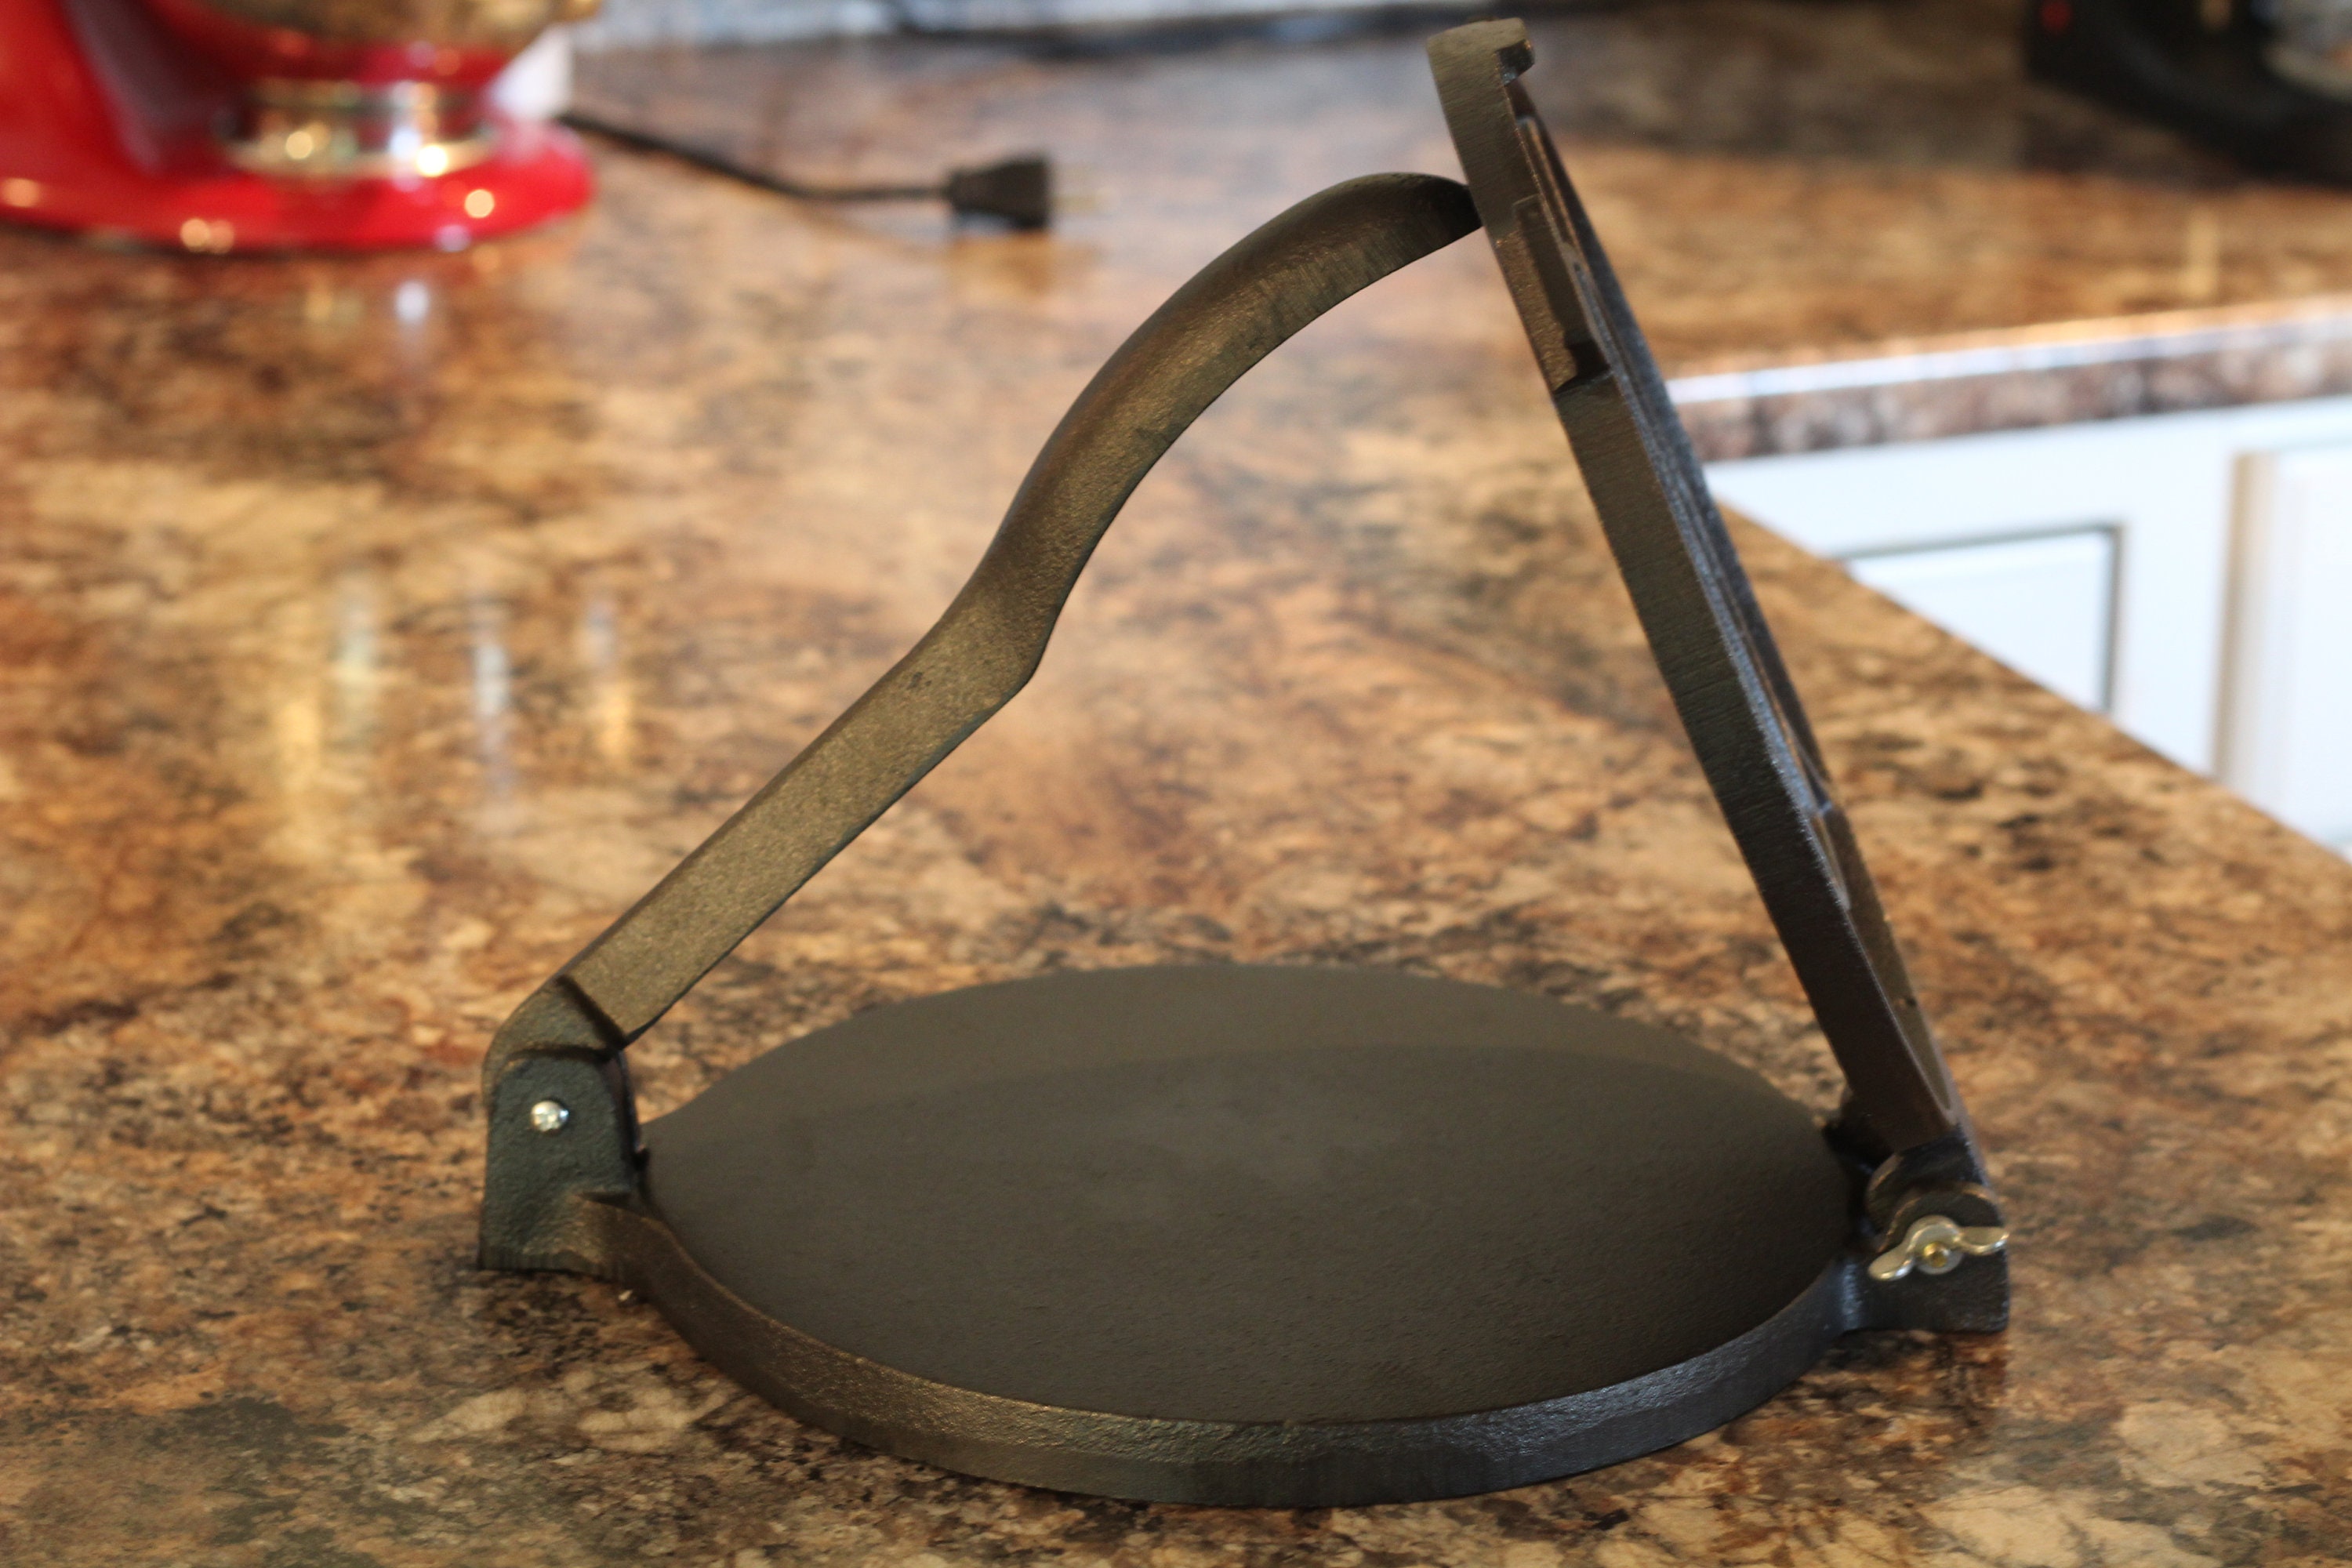 Tortilla press cast iron, 20 cm